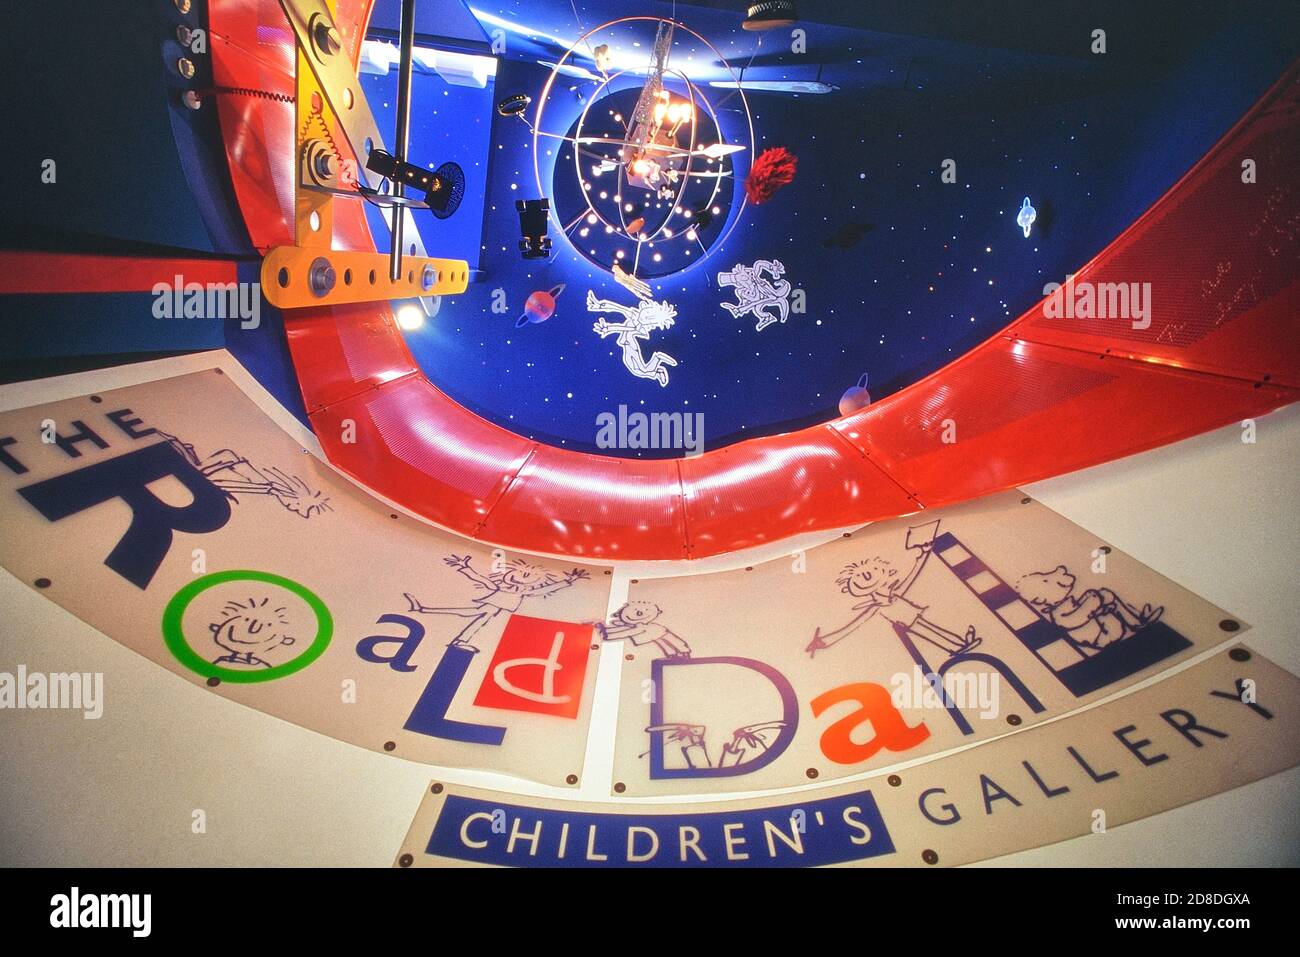 Galerie pour enfants Roald Dahl. Bucks County Museum, Aylesbury, Buckinghamshire, Angleterre, Royaume-Uni. Banque D'Images